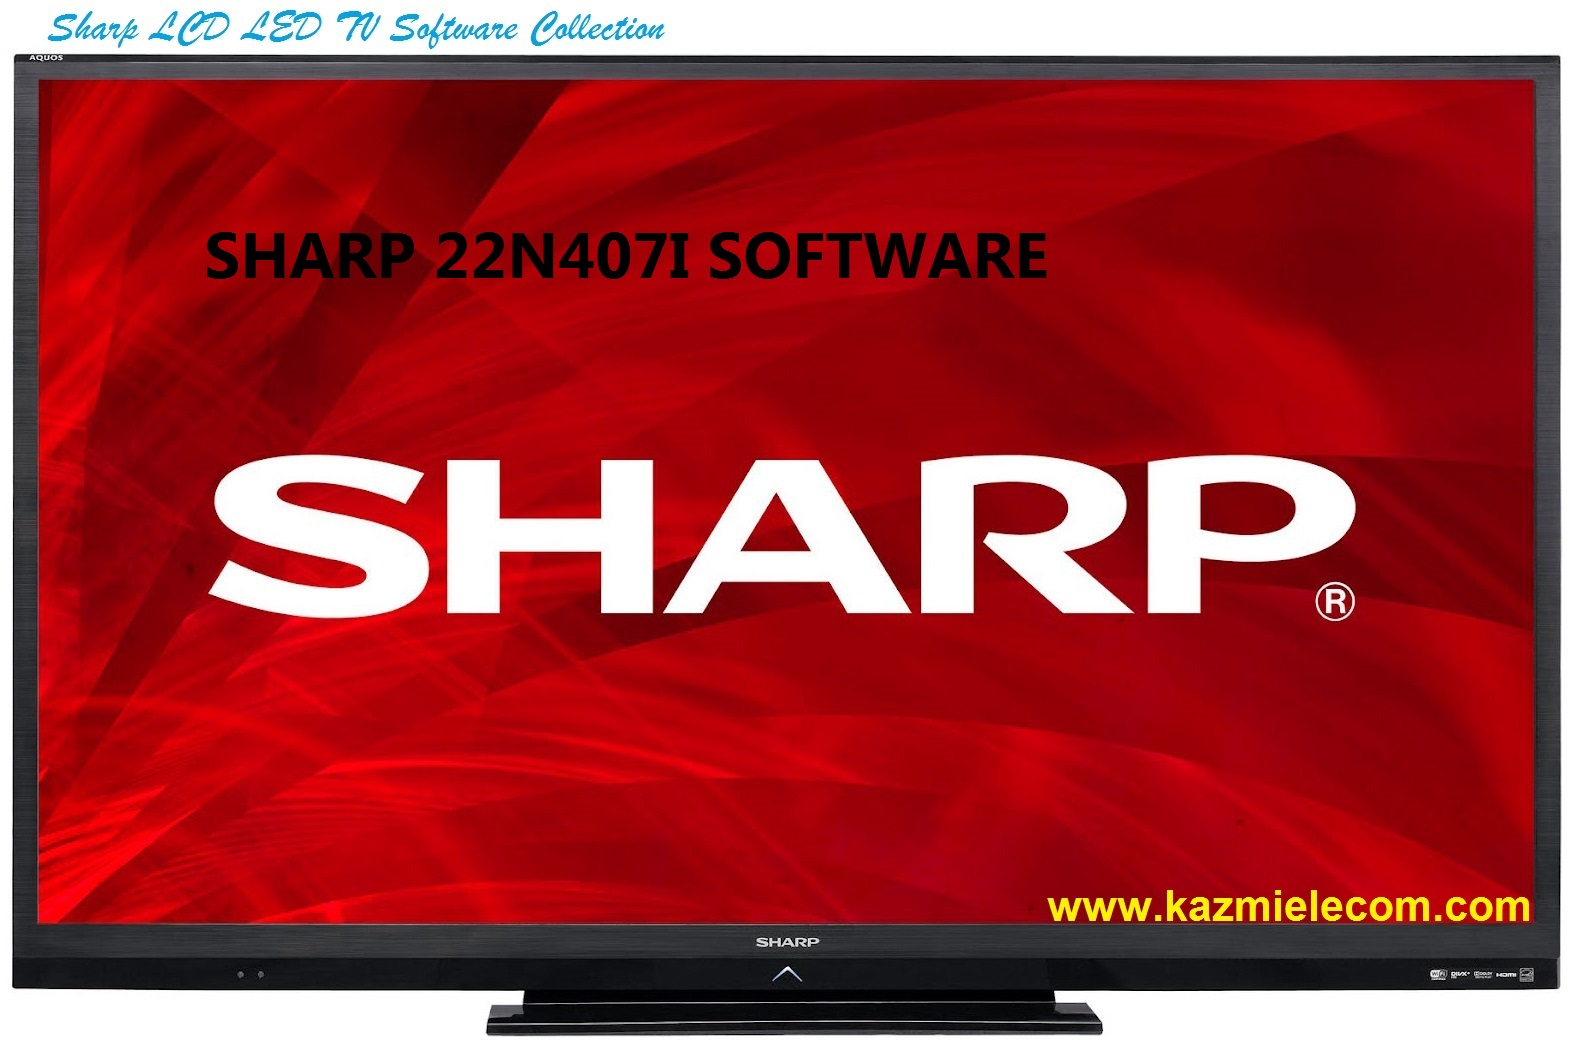 Sharp 22N407I